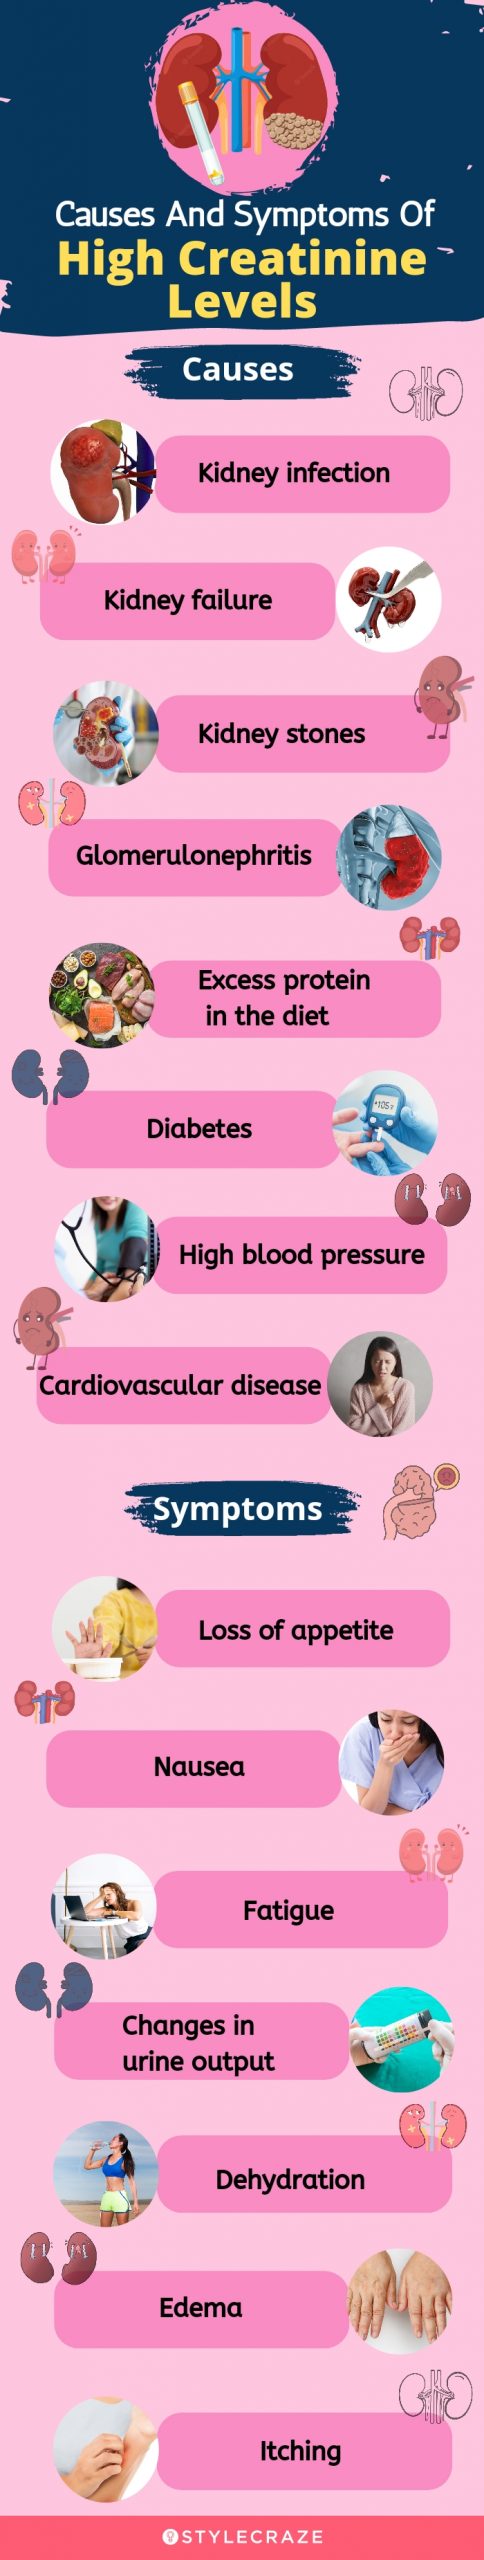 causes et symptômes des niveaux élevés de créatinine [infographie]